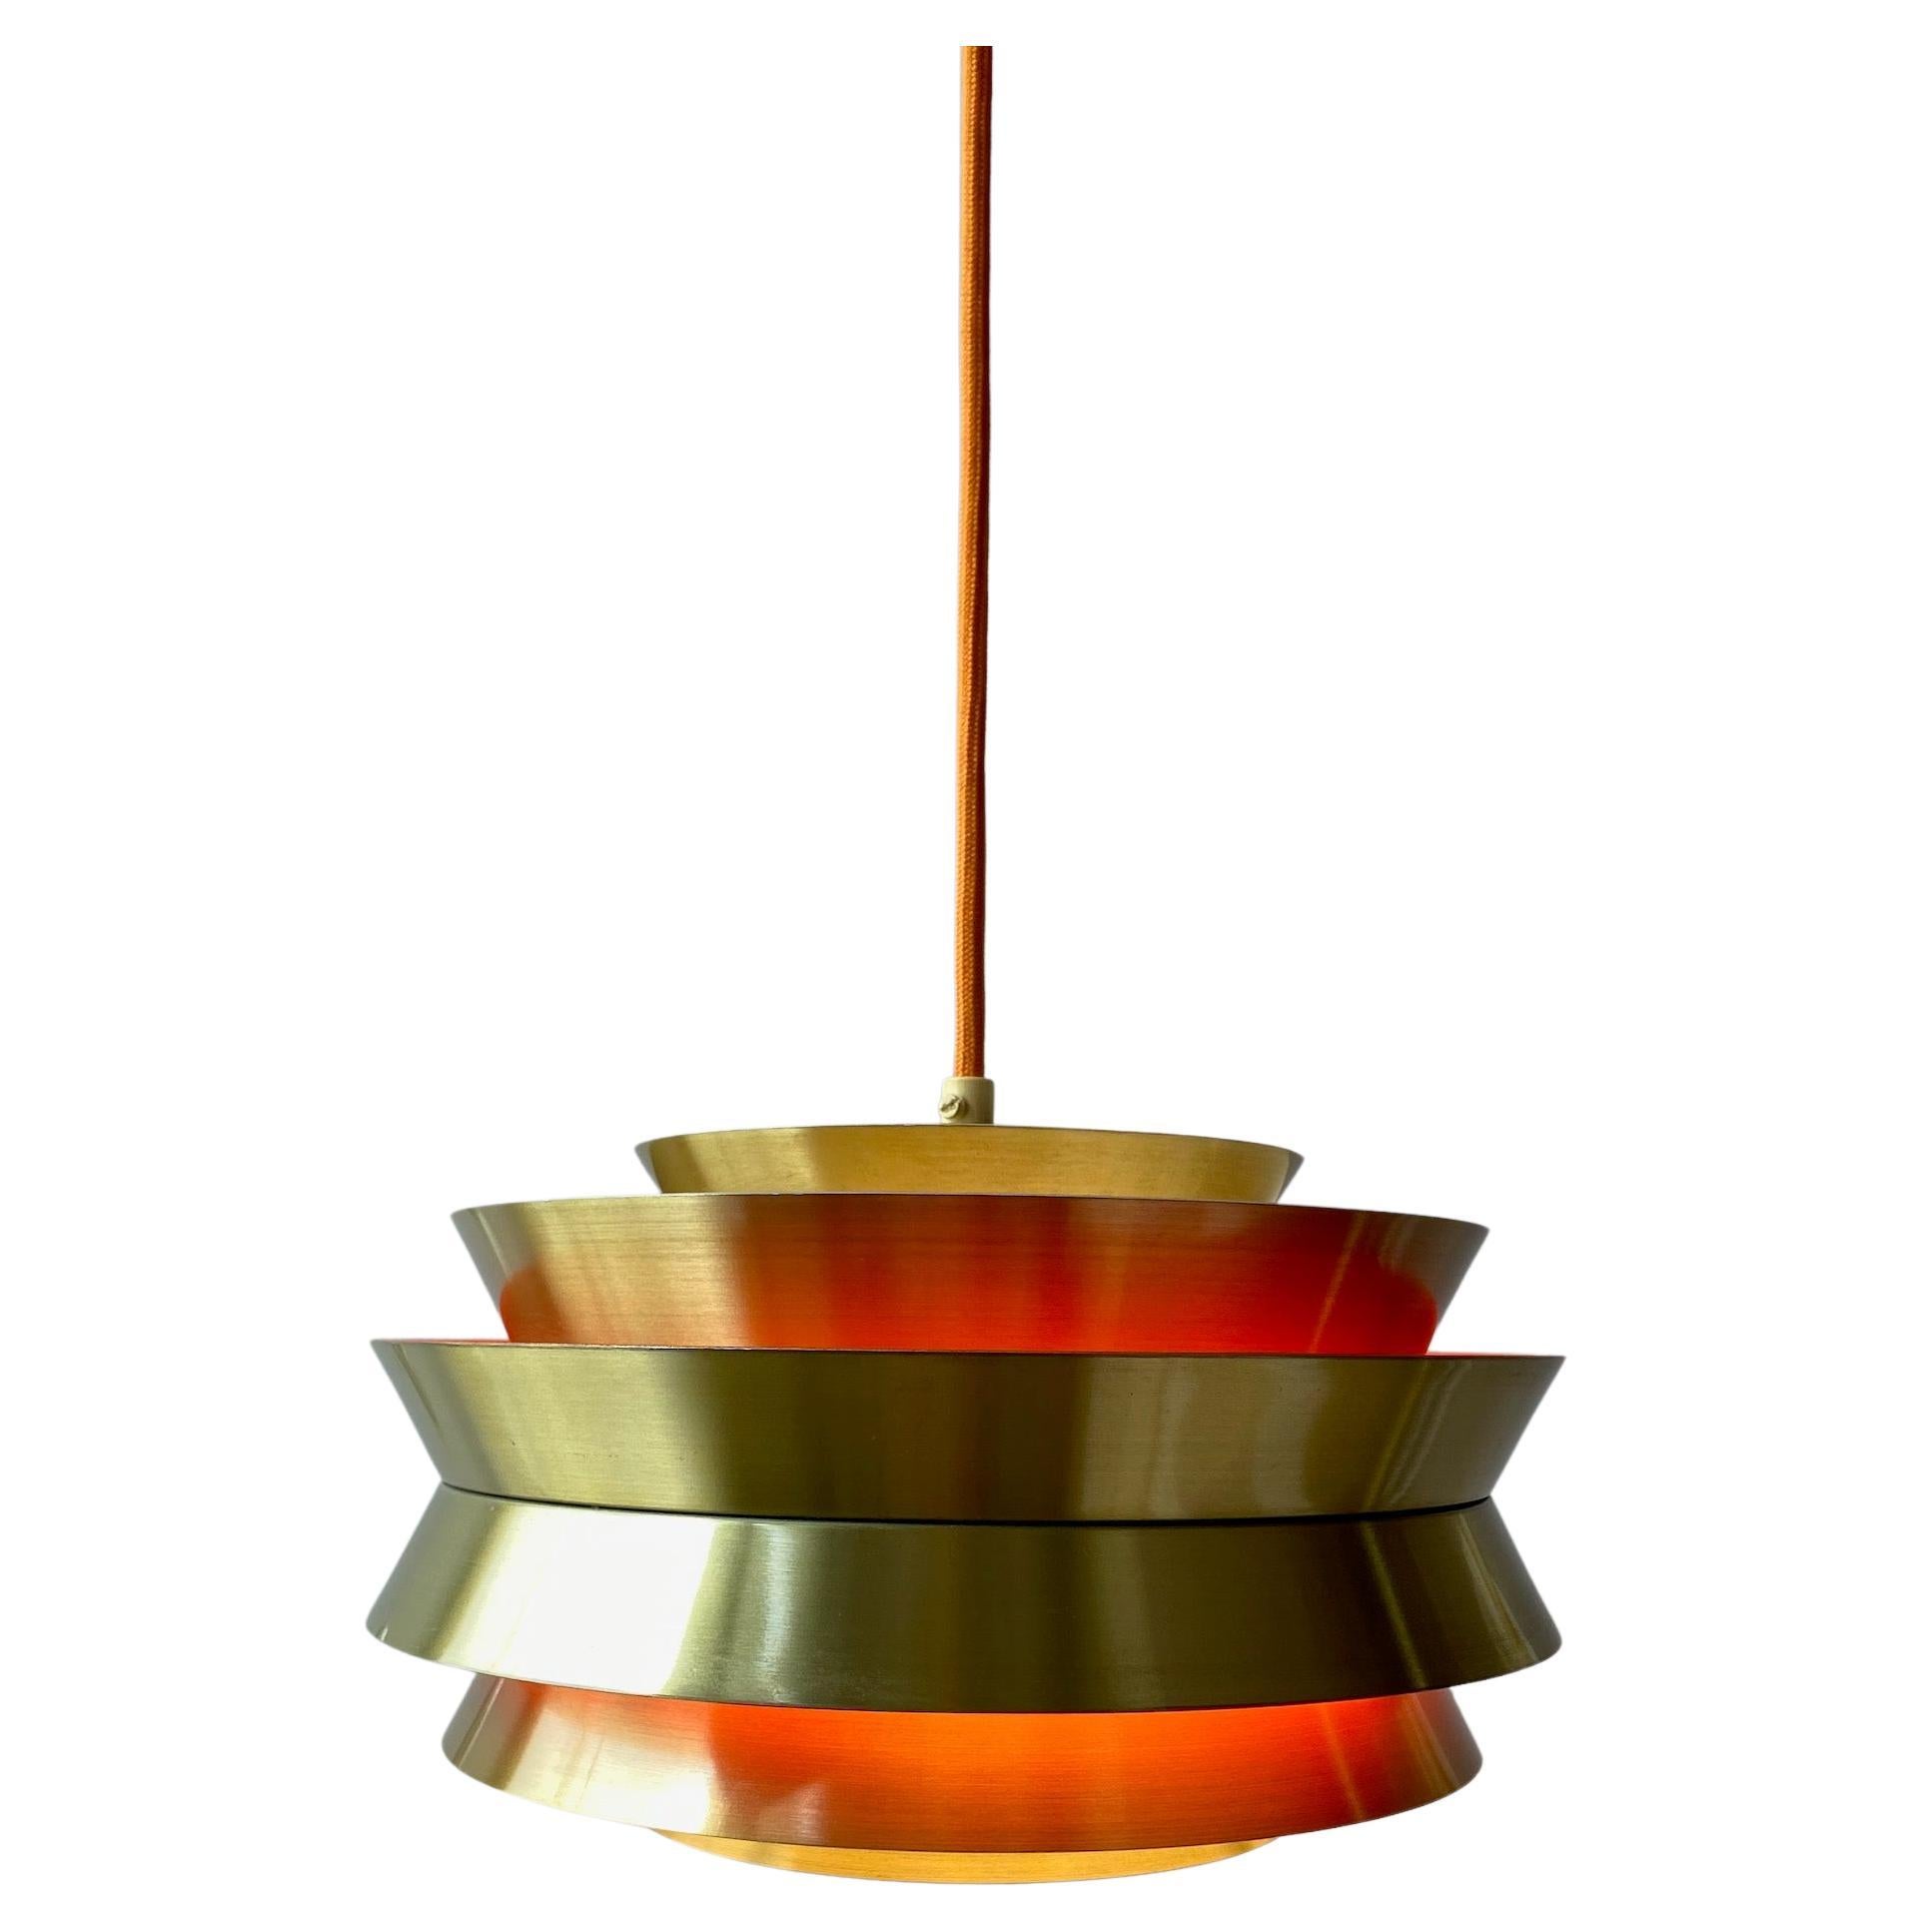 Carl Thore Pendant Lamp Trava by Granhaga Metalindustri